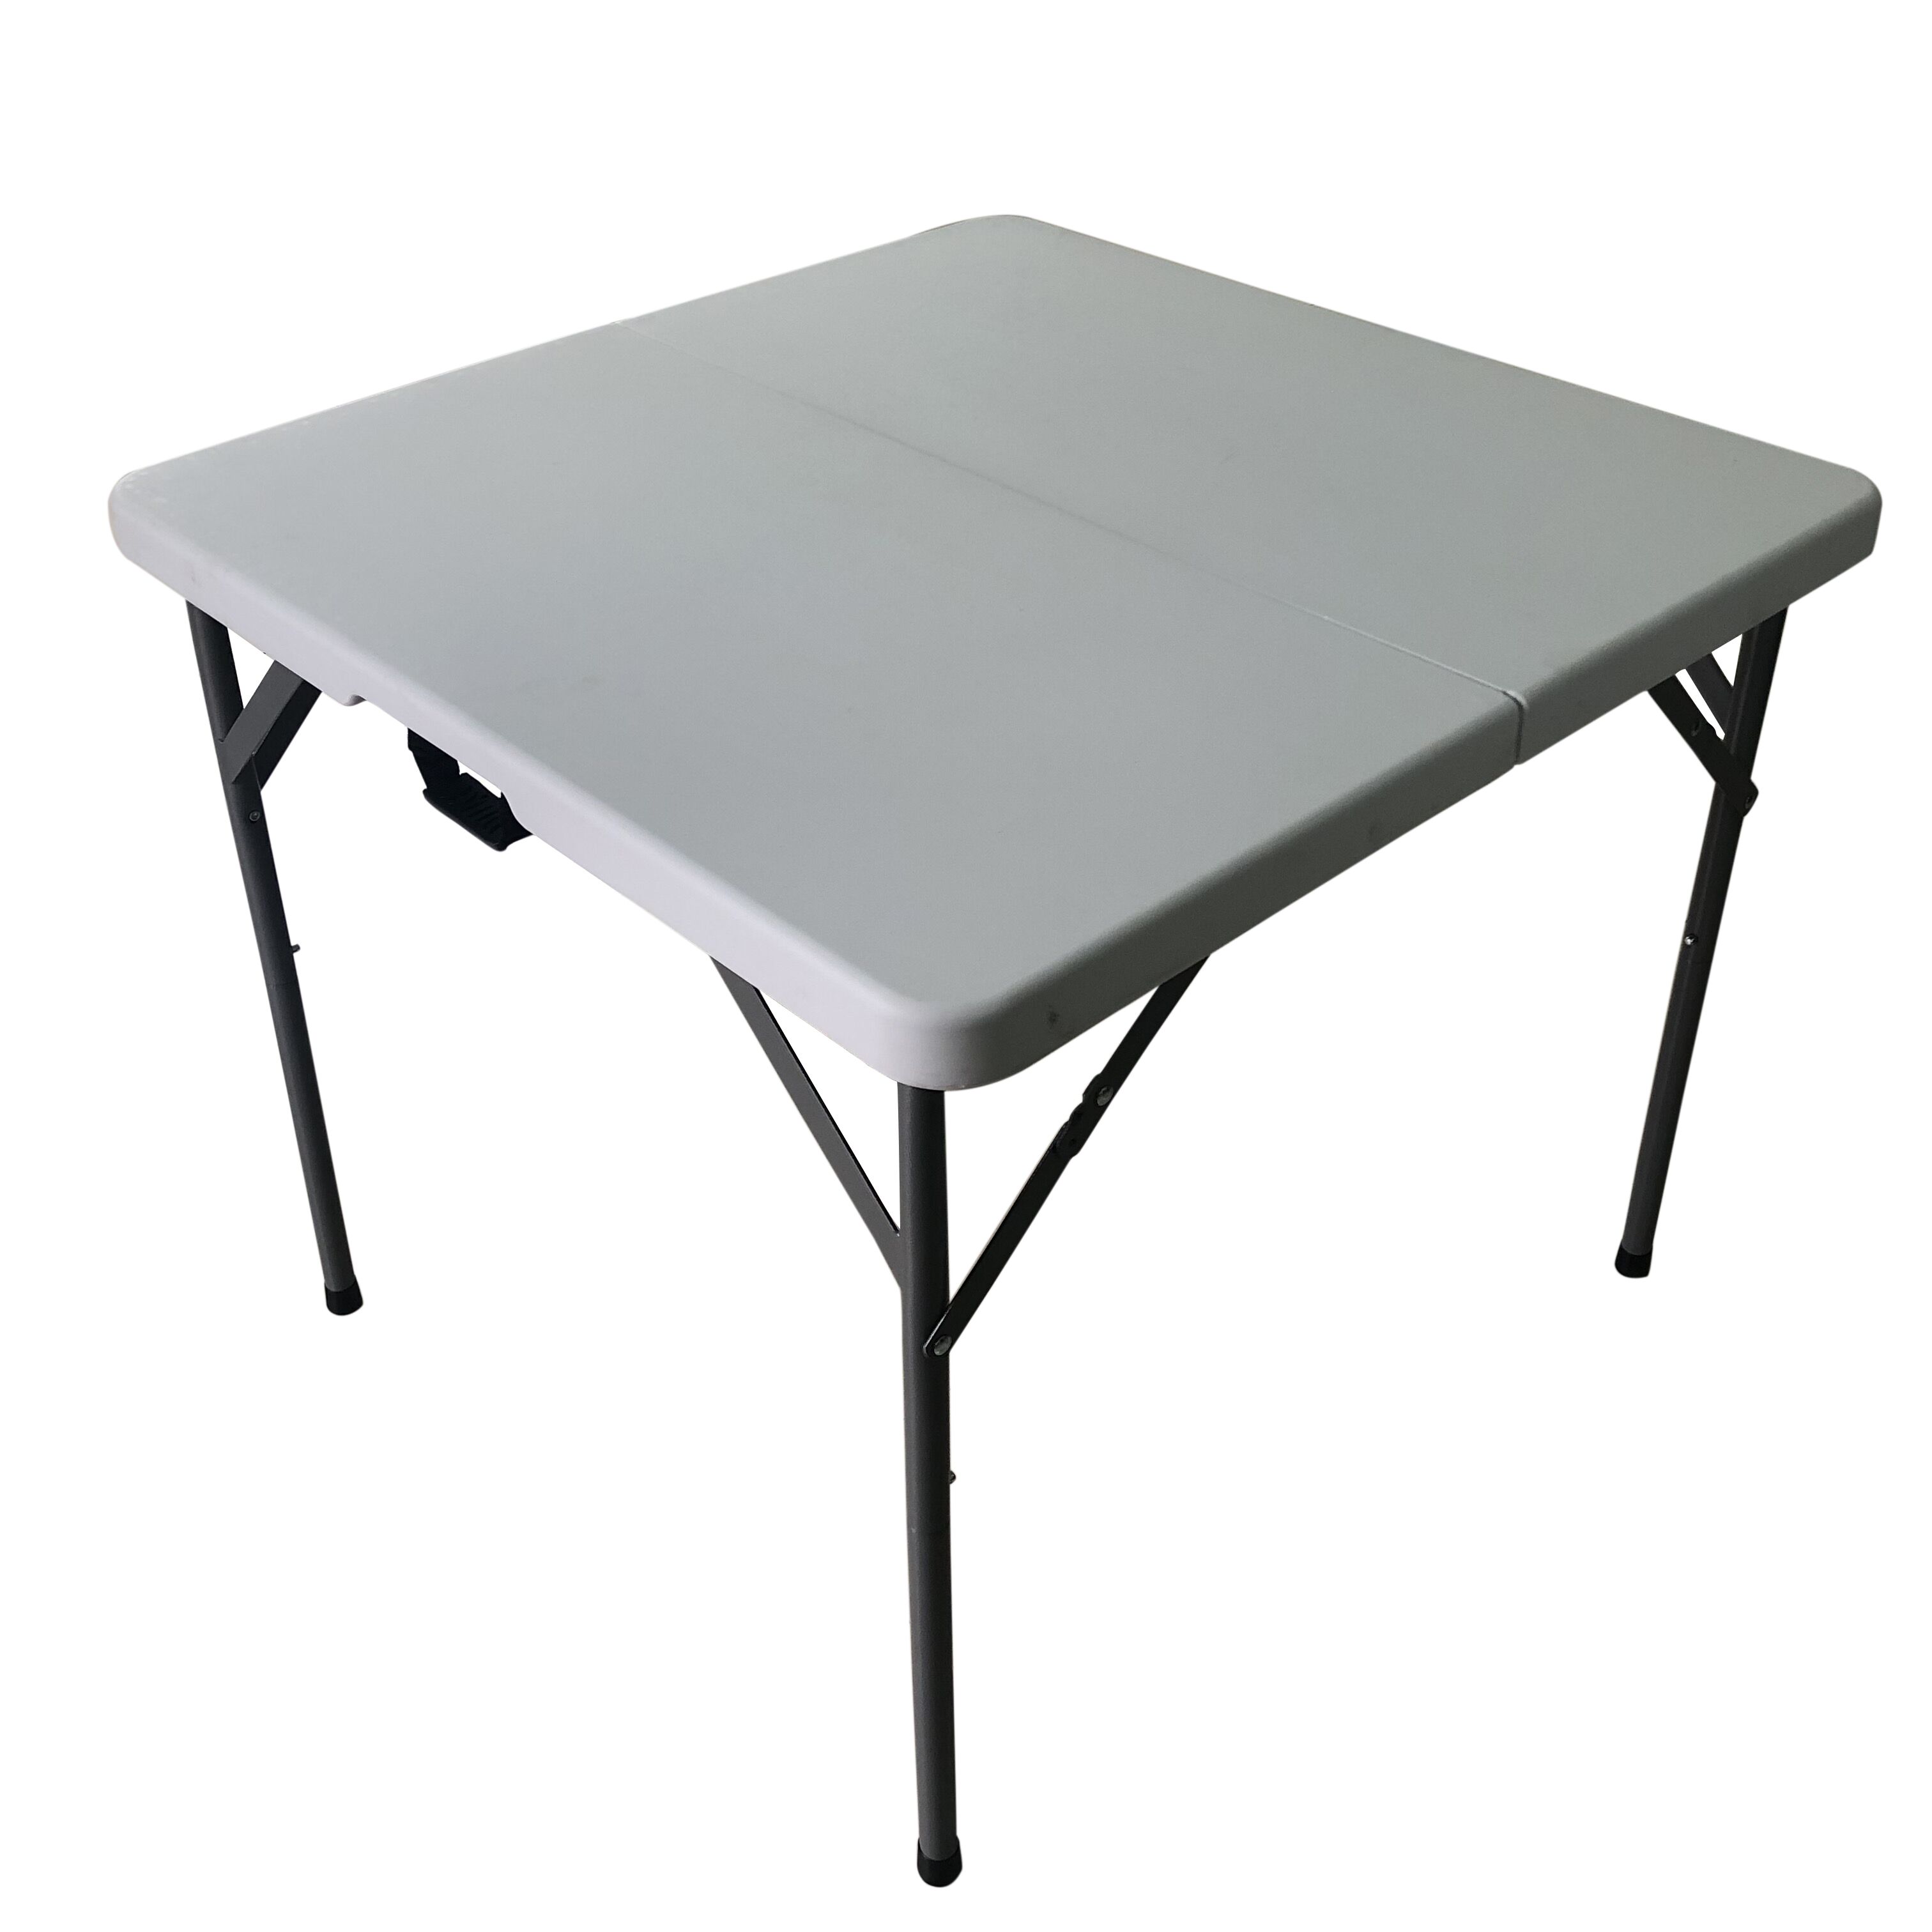 Square folding table